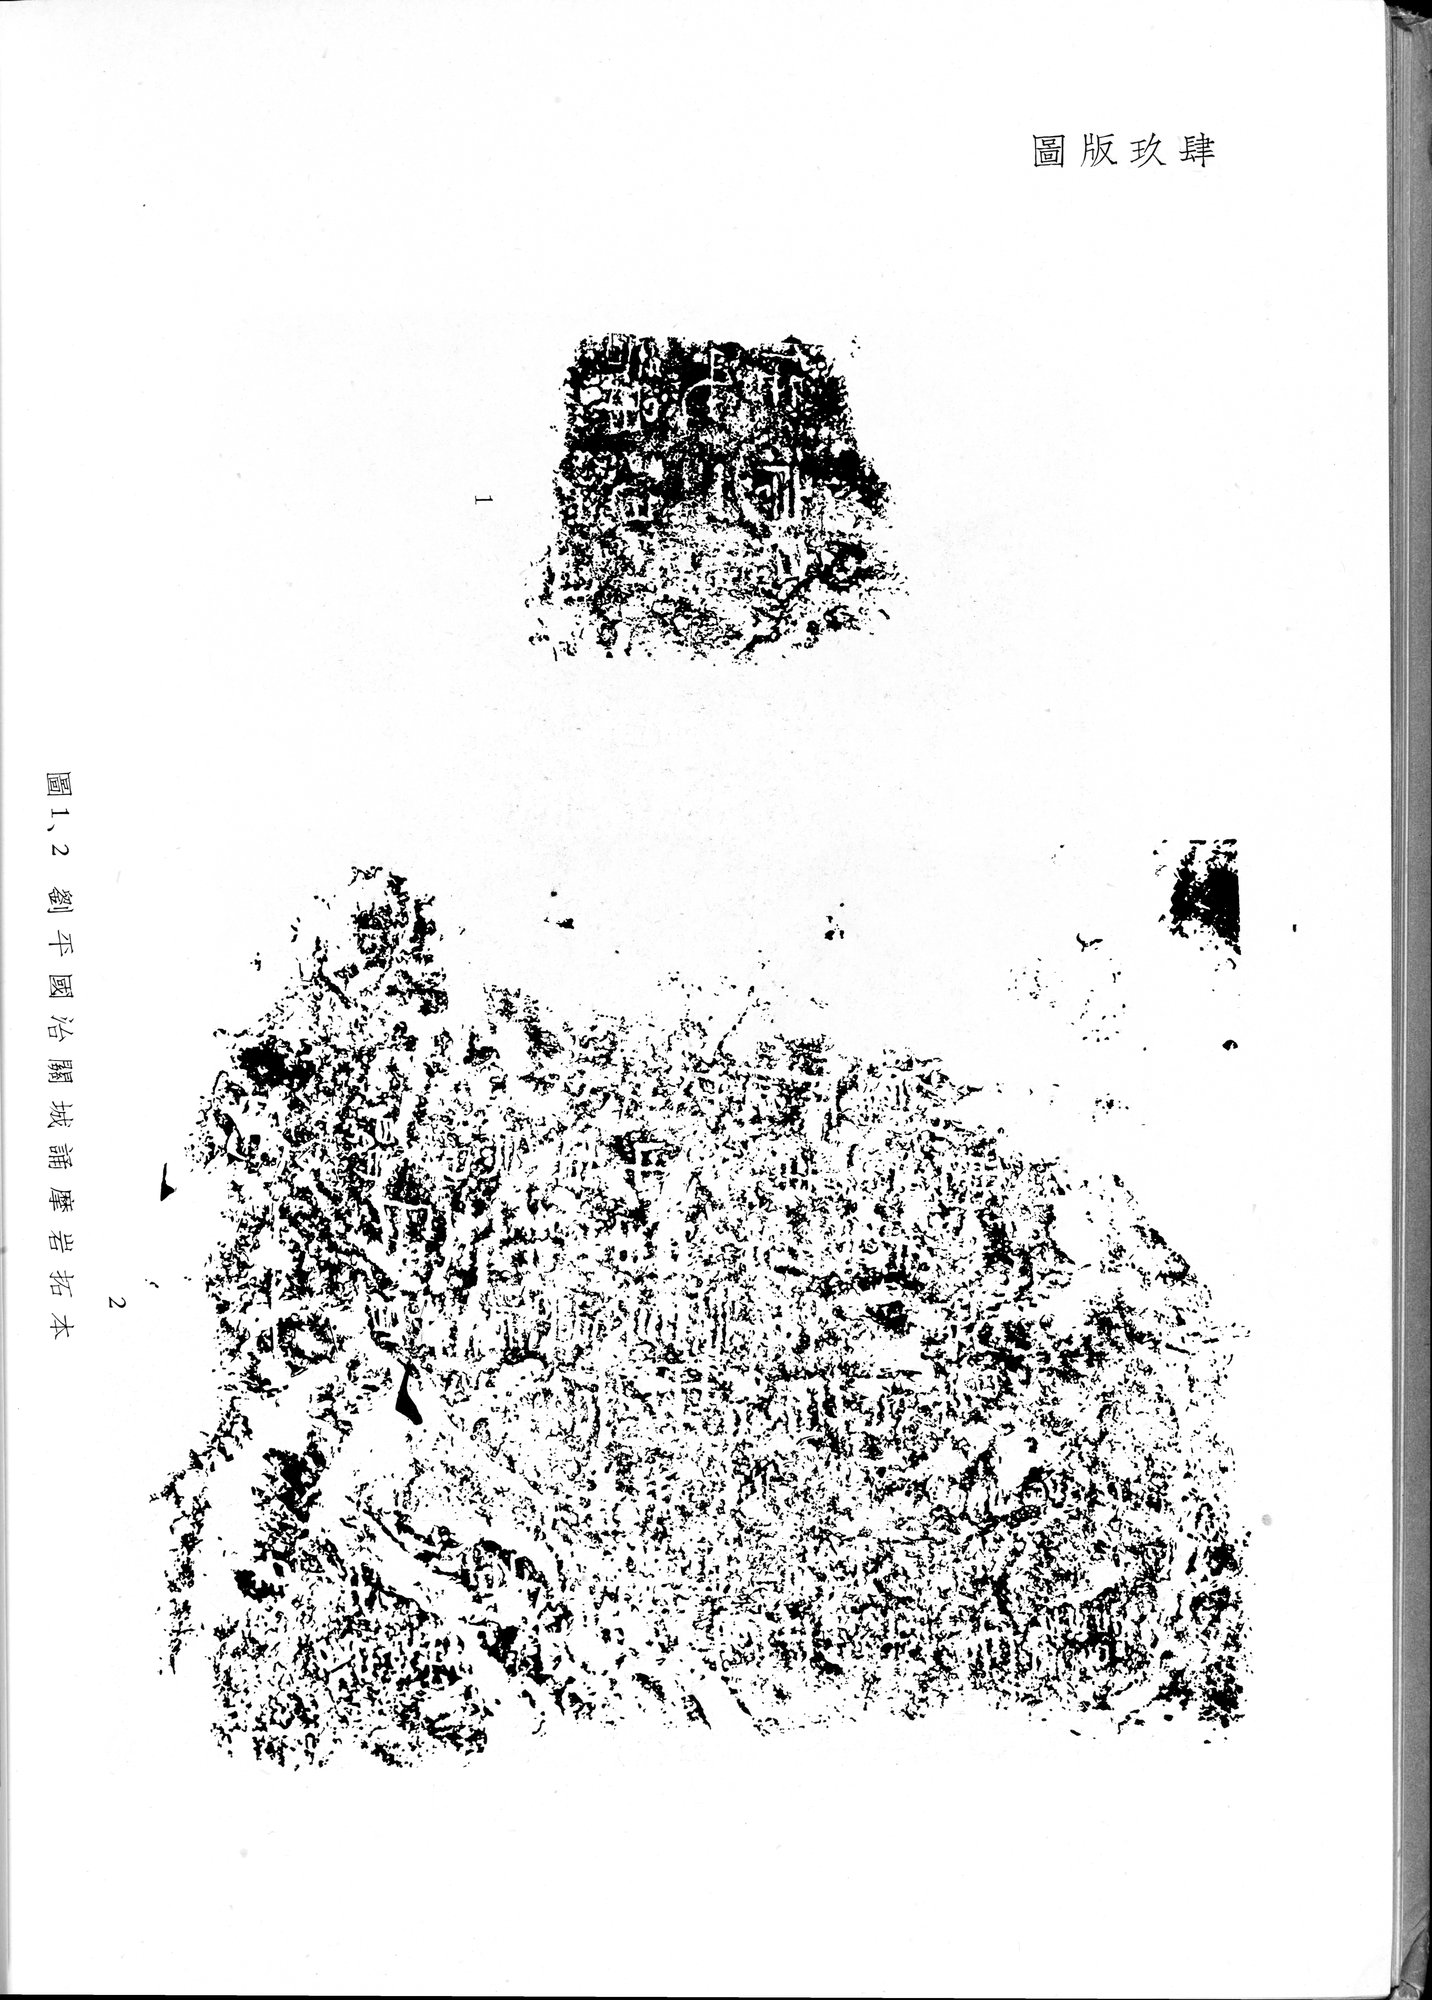 塔里木盆地考古記 : vol.1 / Page 328 (Grayscale High Resolution Image)